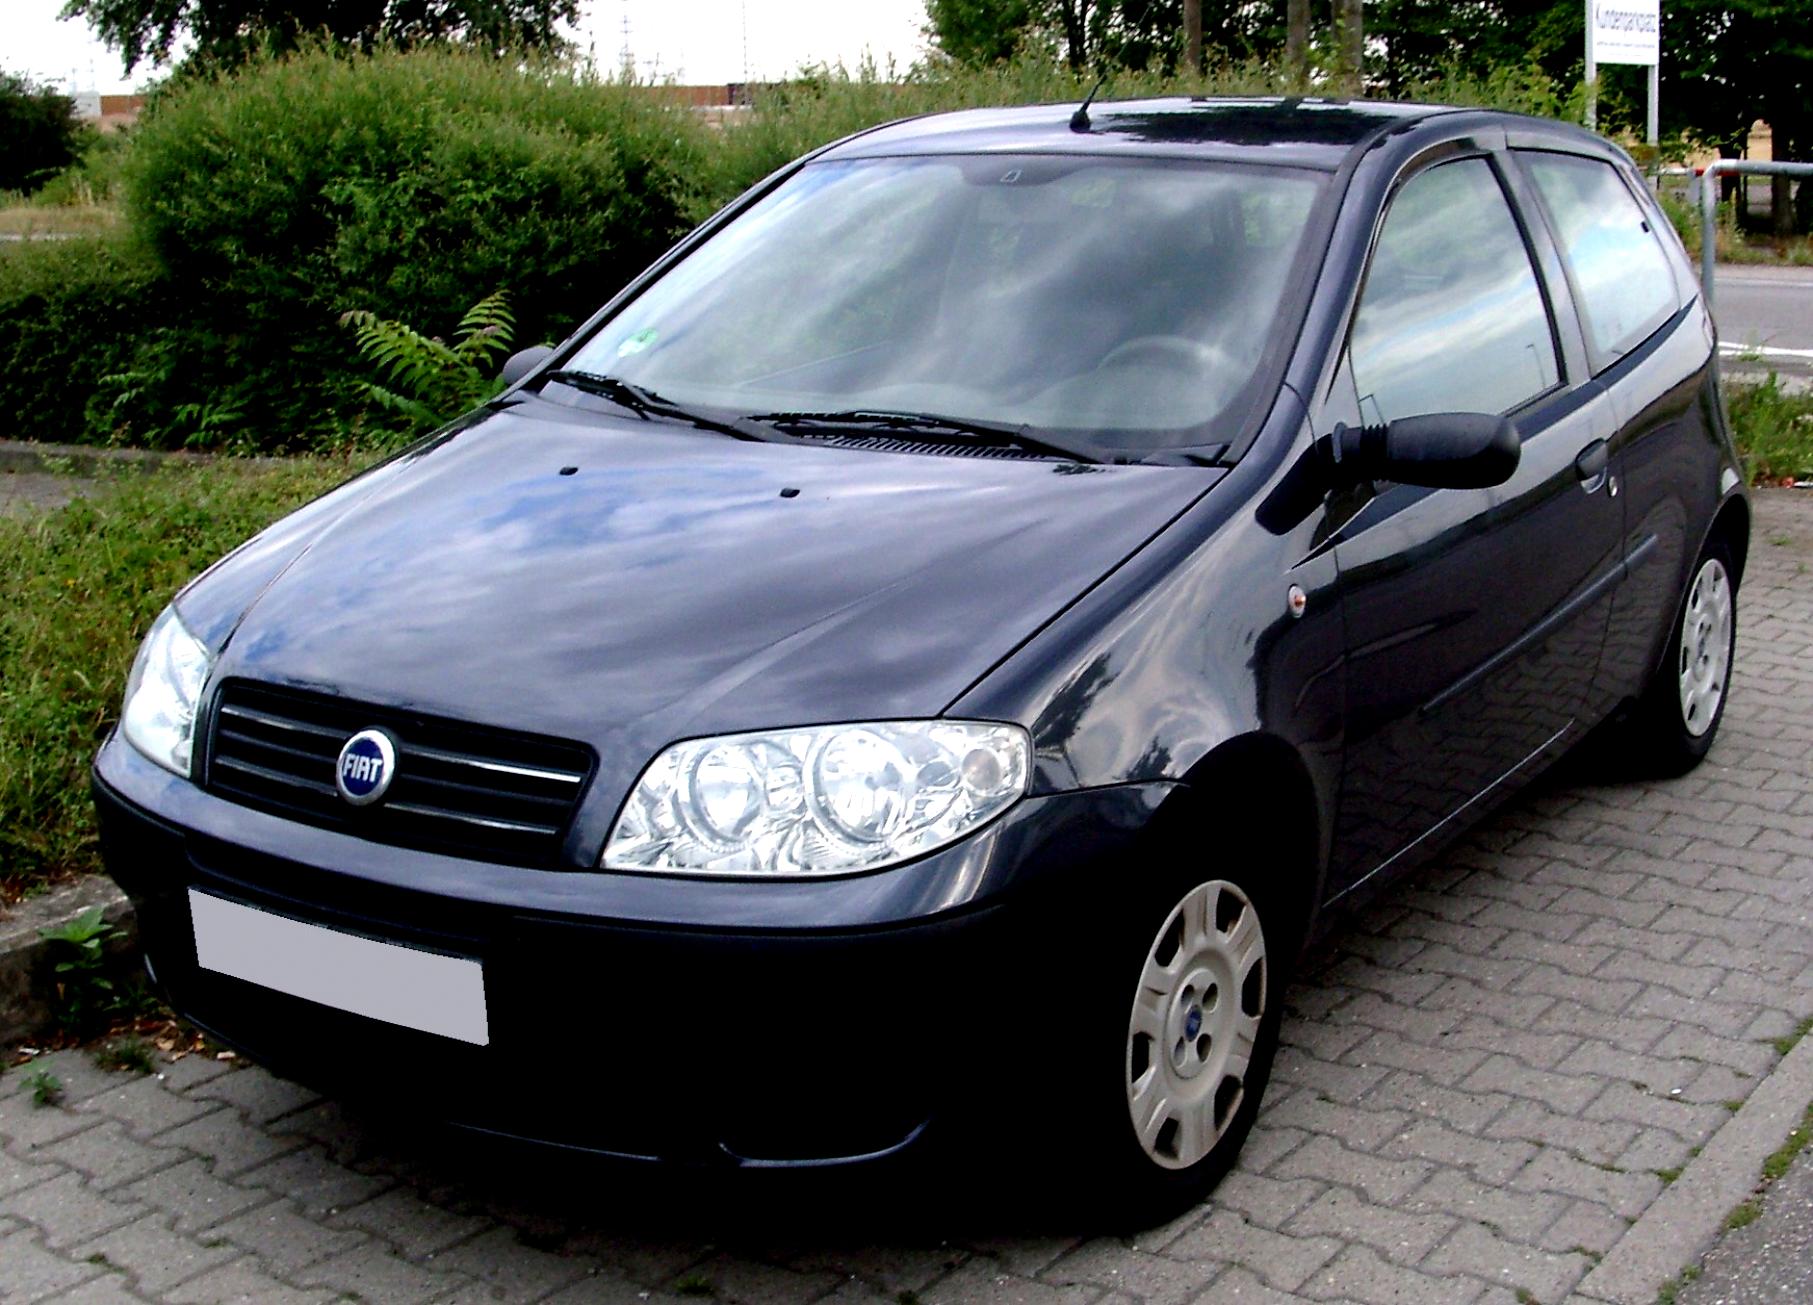 Fiat Panda 2003 #34